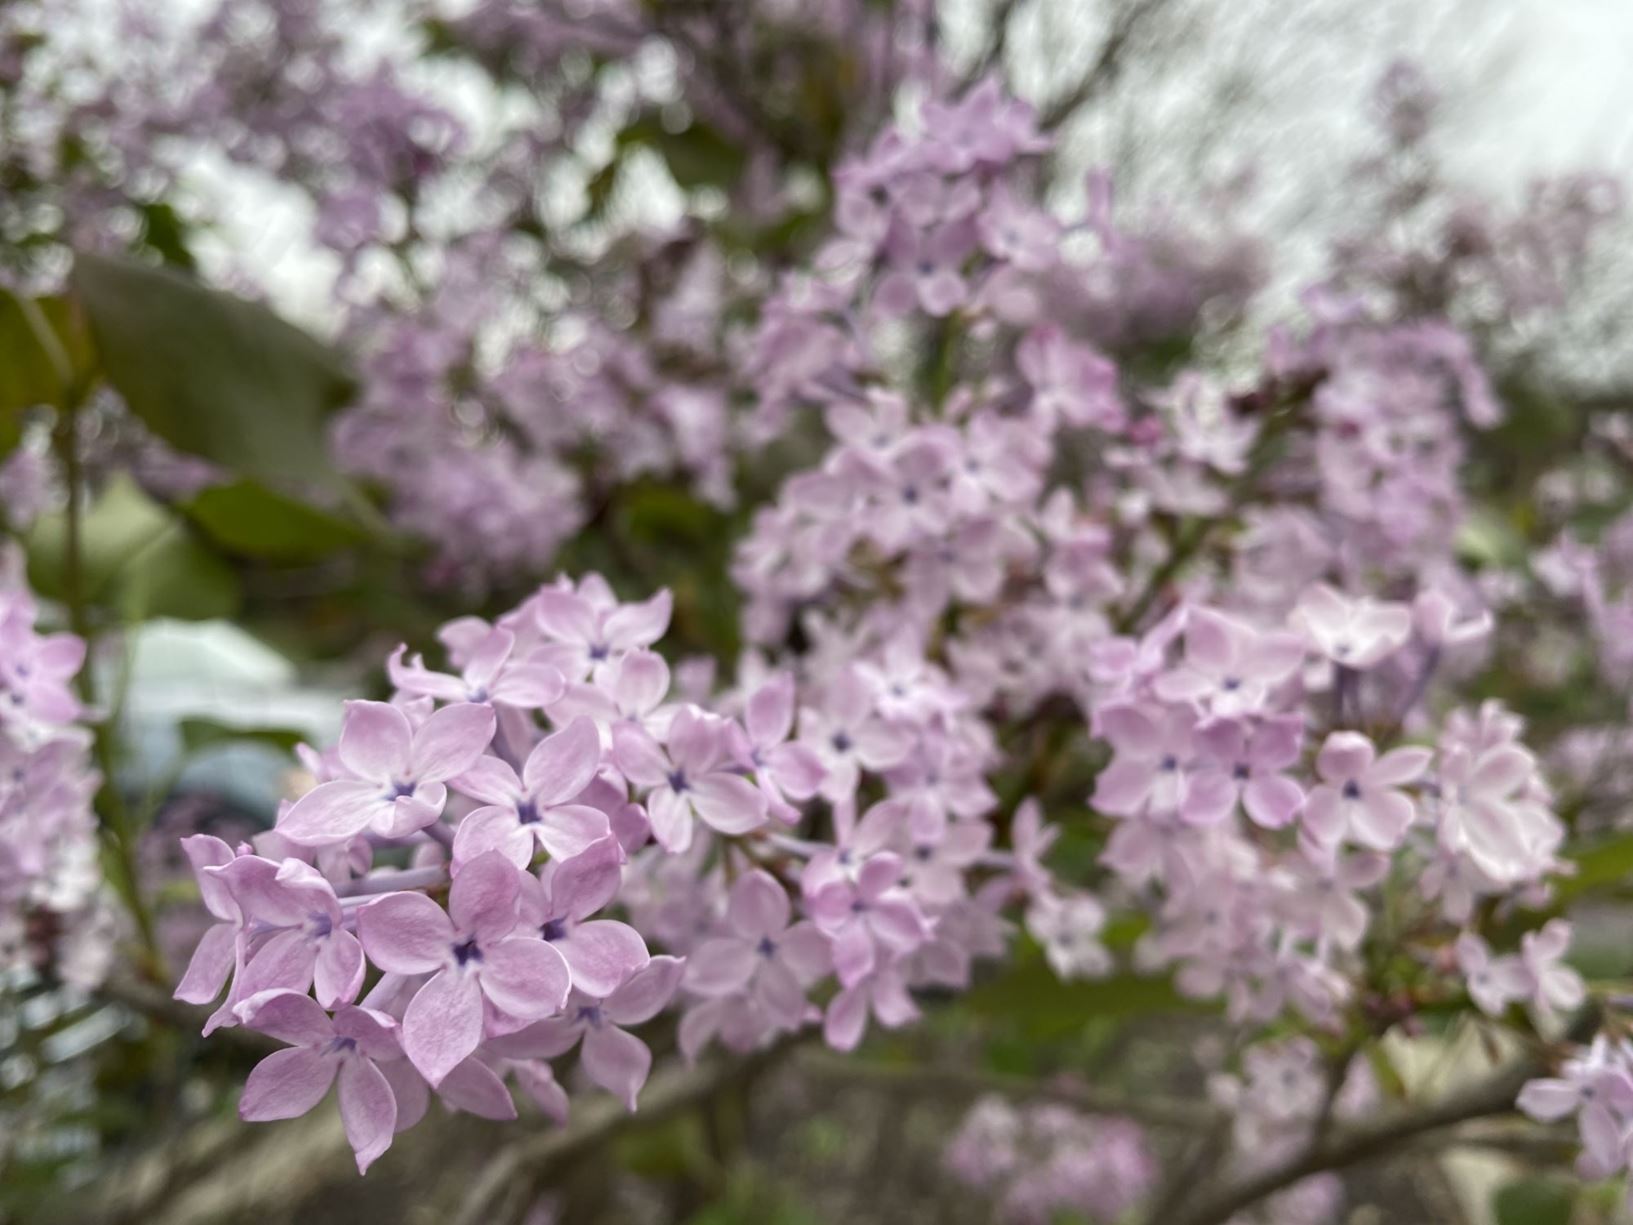 Syringa oblata subsp. dilatata - lilac